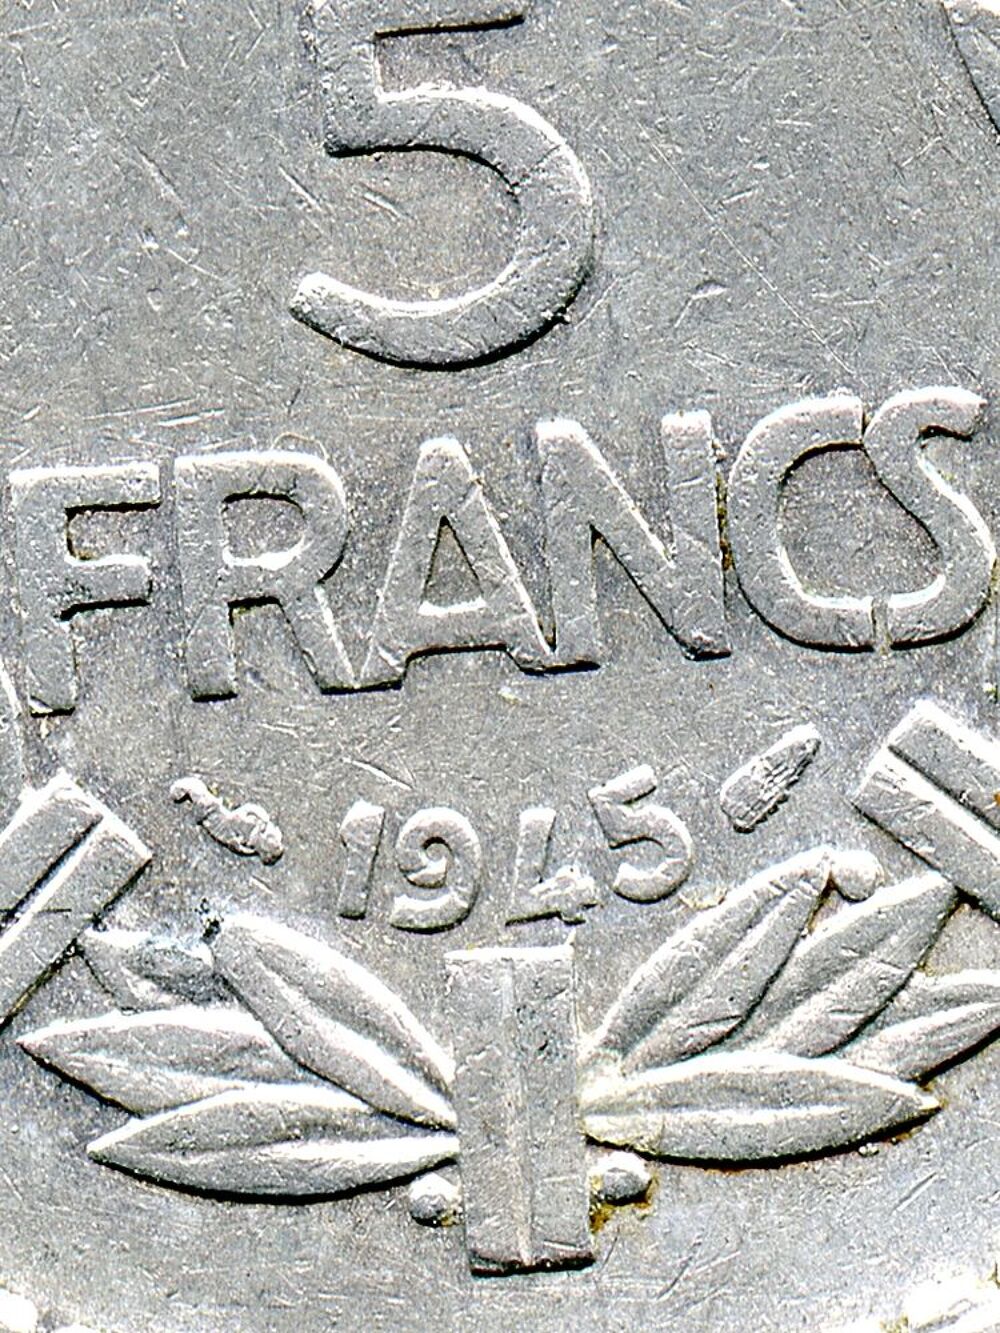 Conseil National de la Resistance : 5 francs 1945 A Lavrilli 